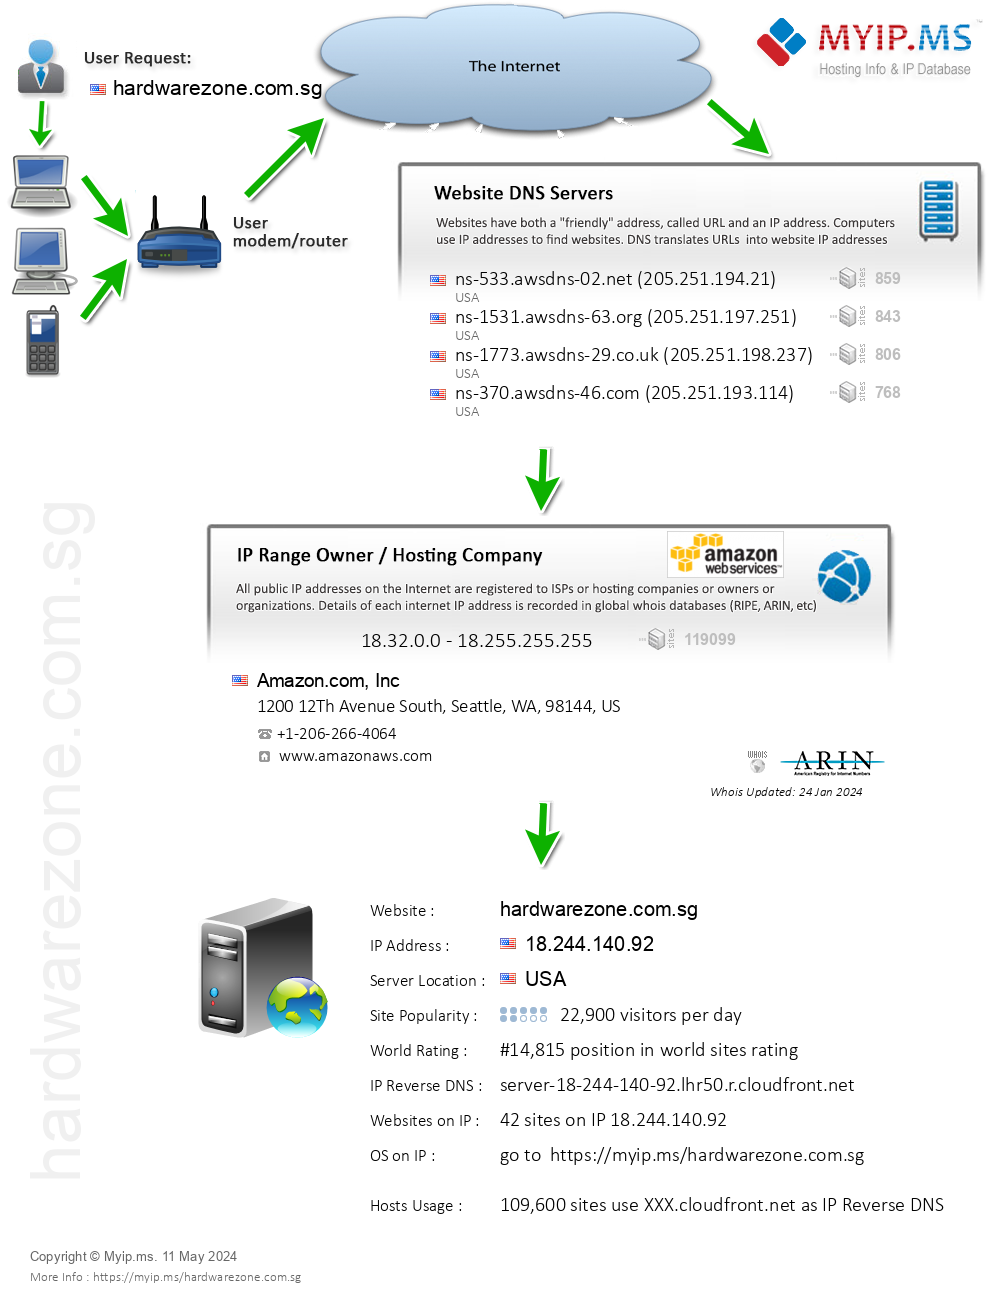 Hardwarezone.com.sg - Website Hosting Visual IP Diagram